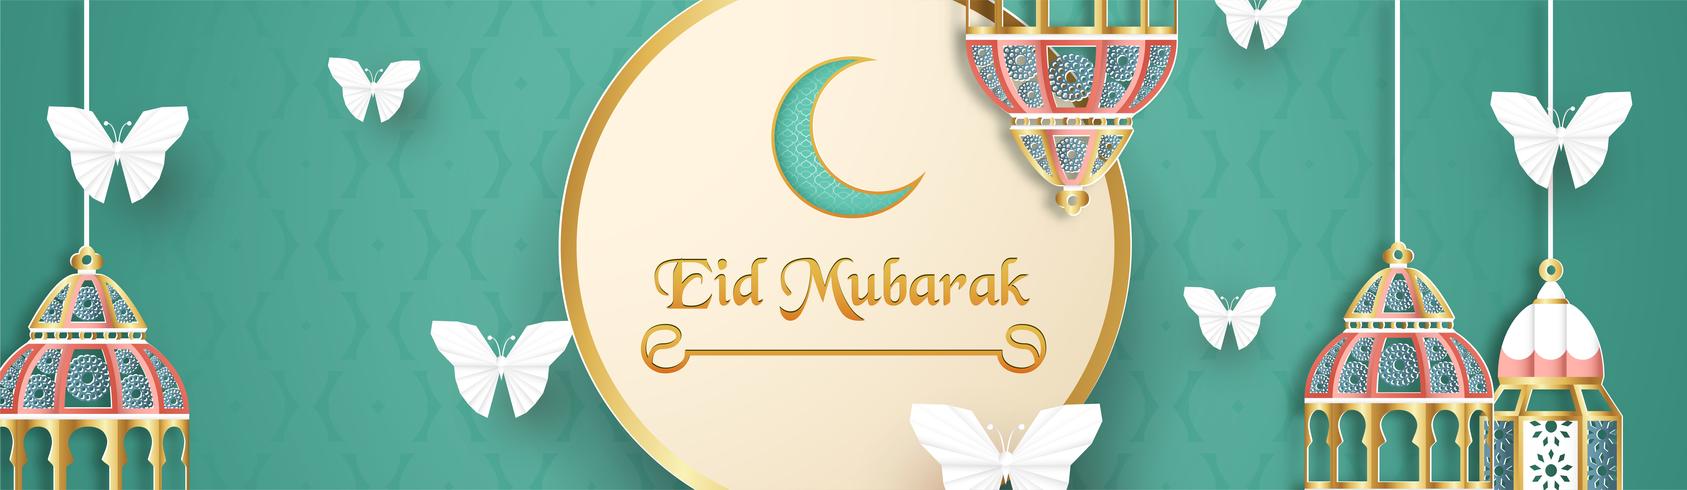 Plantilla para Eid Mubarak en tono verde y dorado. Ejemplo del vector 3D en el corte y el arte del papel para la tarjeta de felicitación islámica, invitación, cubierta de libro, folleto, bandera del web, anuncio.